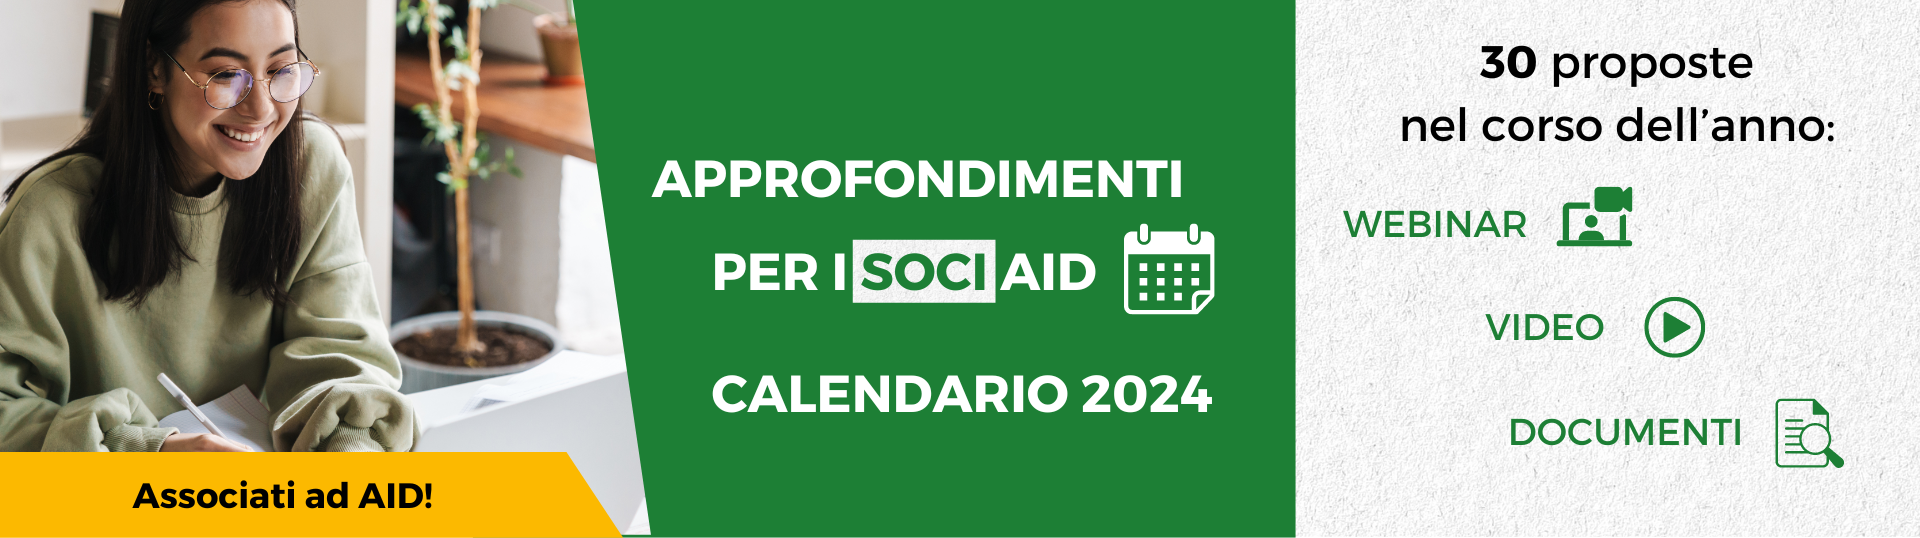 Calendario approfondimenti soci AID 2024: tutti gli aggiornamenti